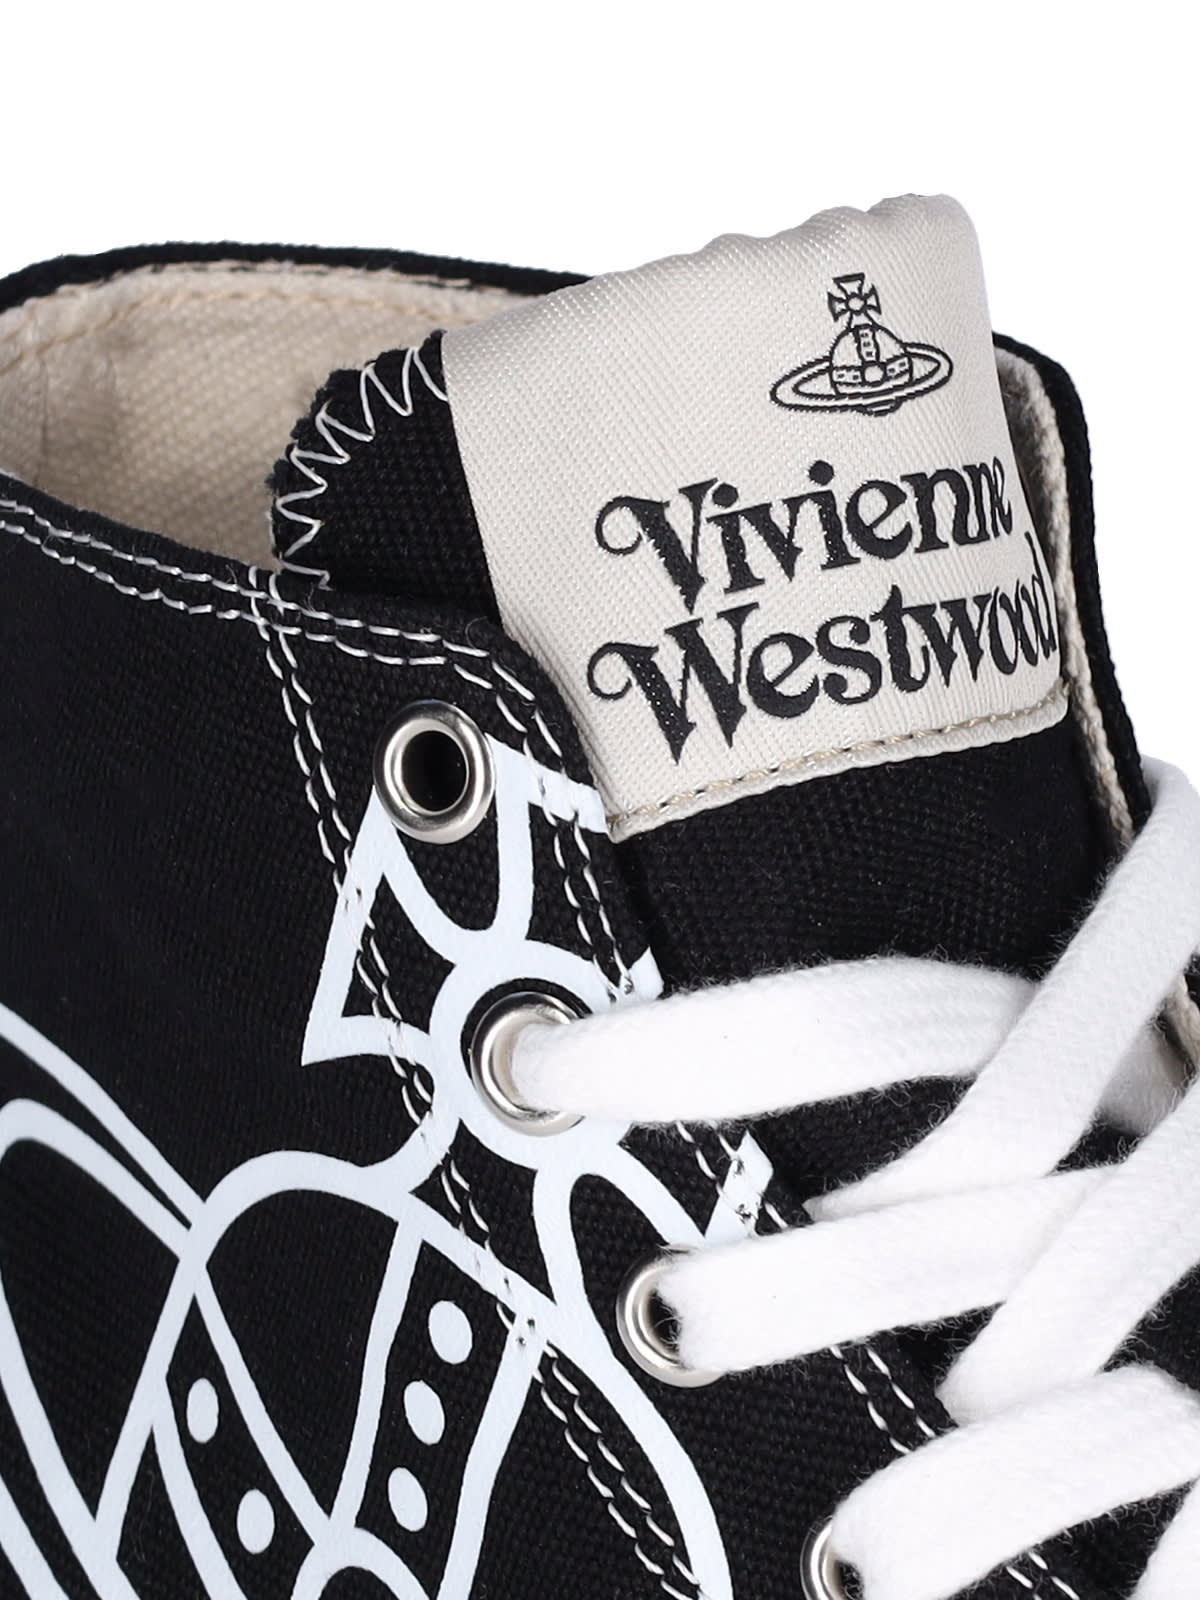 Shop Vivienne Westwood Plimsoll High Sneakers In Black